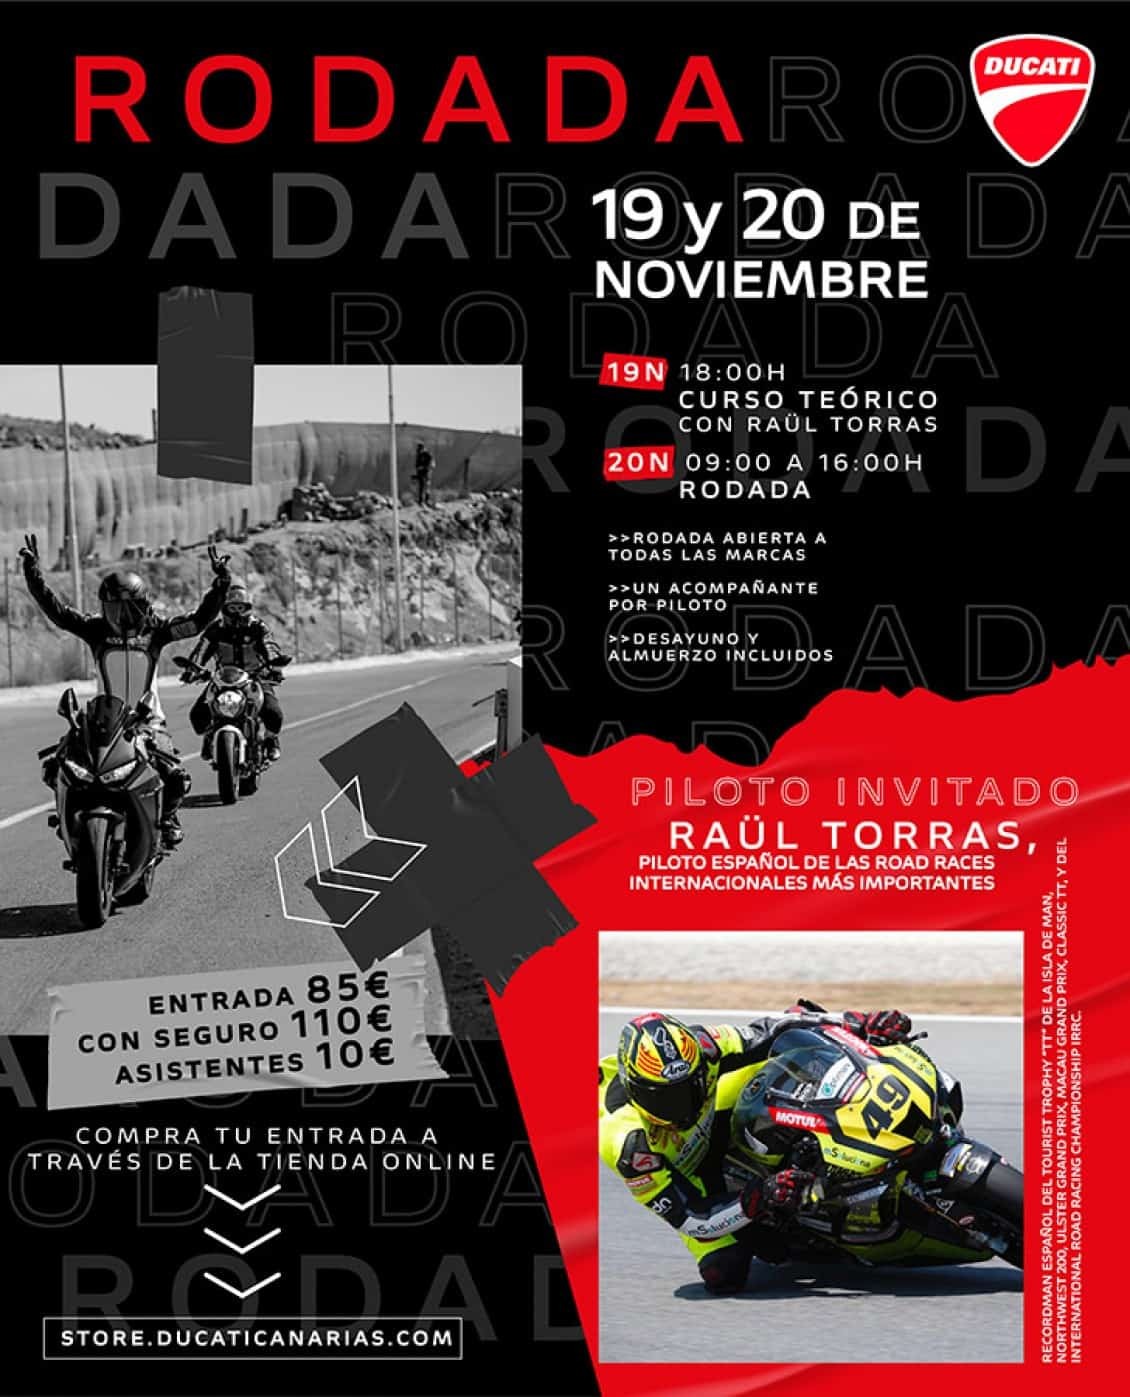 ¡Ducati Canarias vuelve al circuito por todo lo alto!